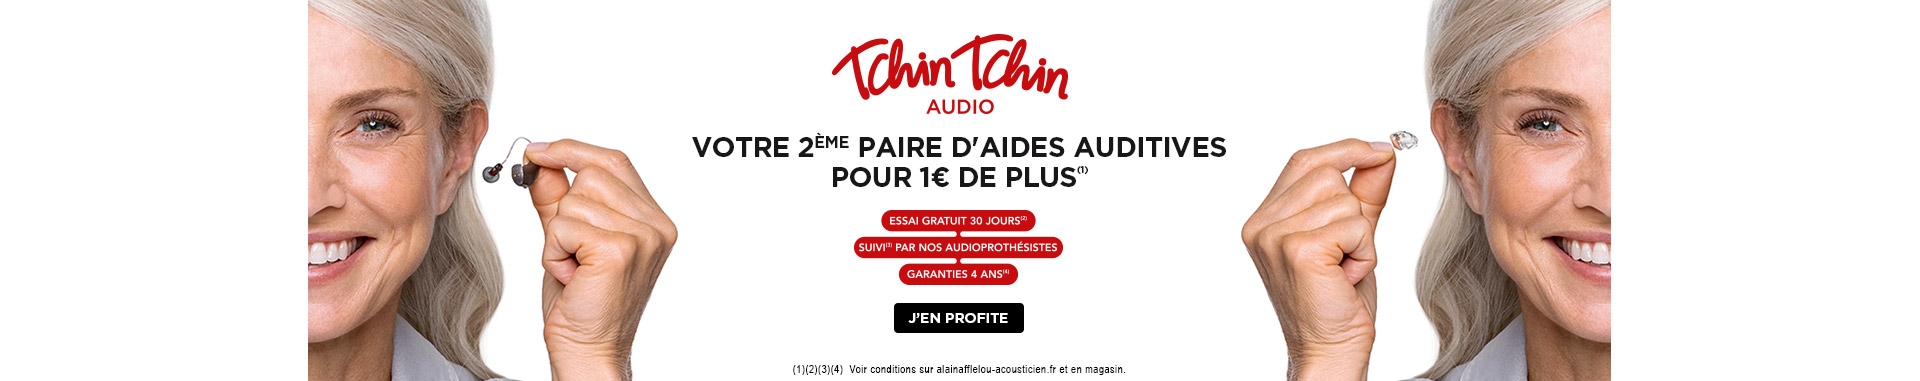 Tchin Tchin Audio, votre 2e paire d'aides auditives pour 1€ de plus !